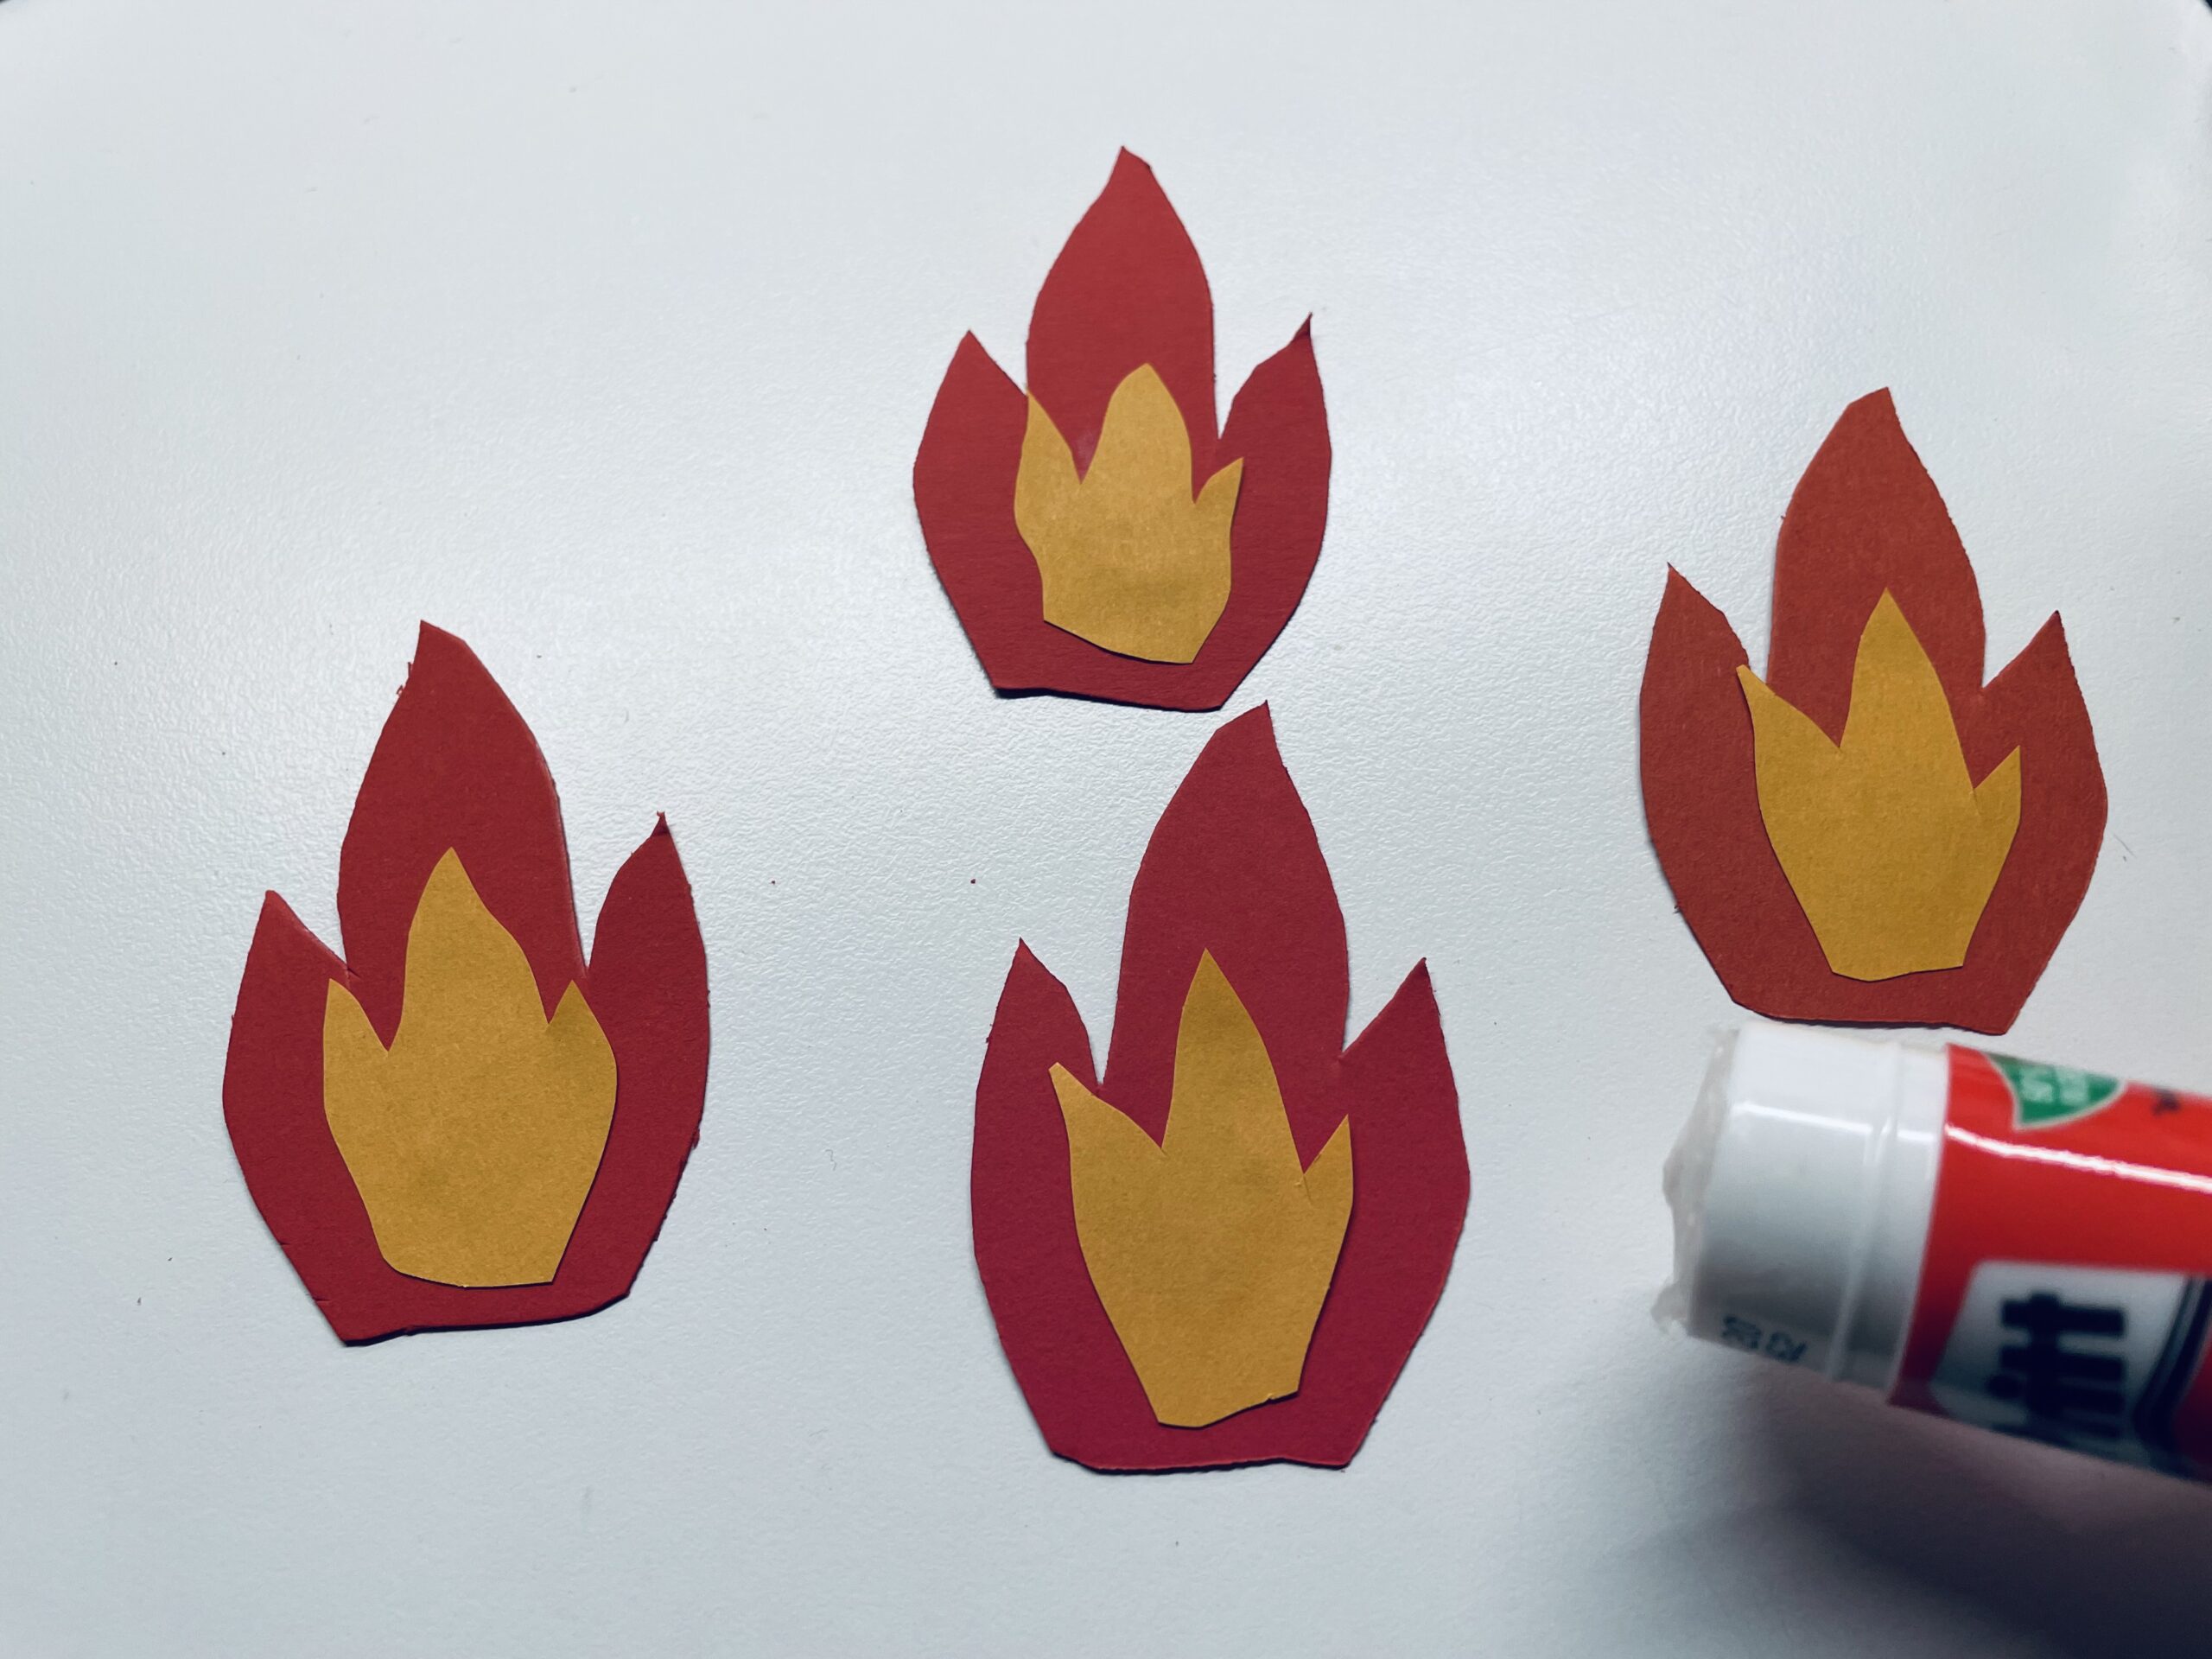 Bild zum Schritt 15 für das Bastel- und DIY-Abenteuer für Kinder: 'Klebt die Flammen jeweils zusammen.'